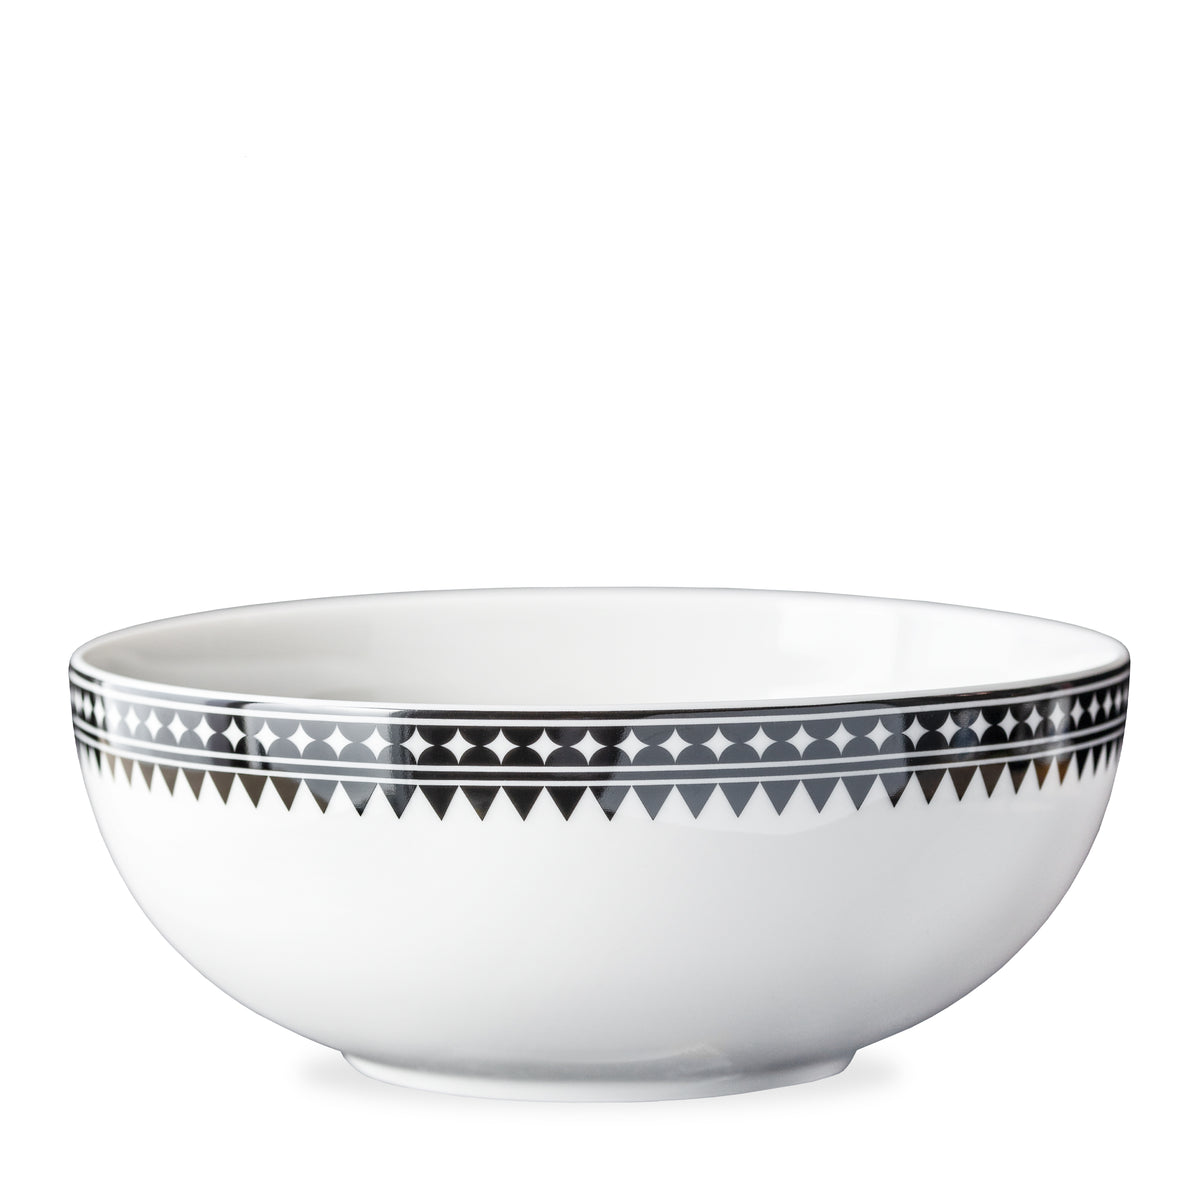 Marrakech Vegetable Serving Bowl in black and white high-fired porcelain dinnerware- Caskata